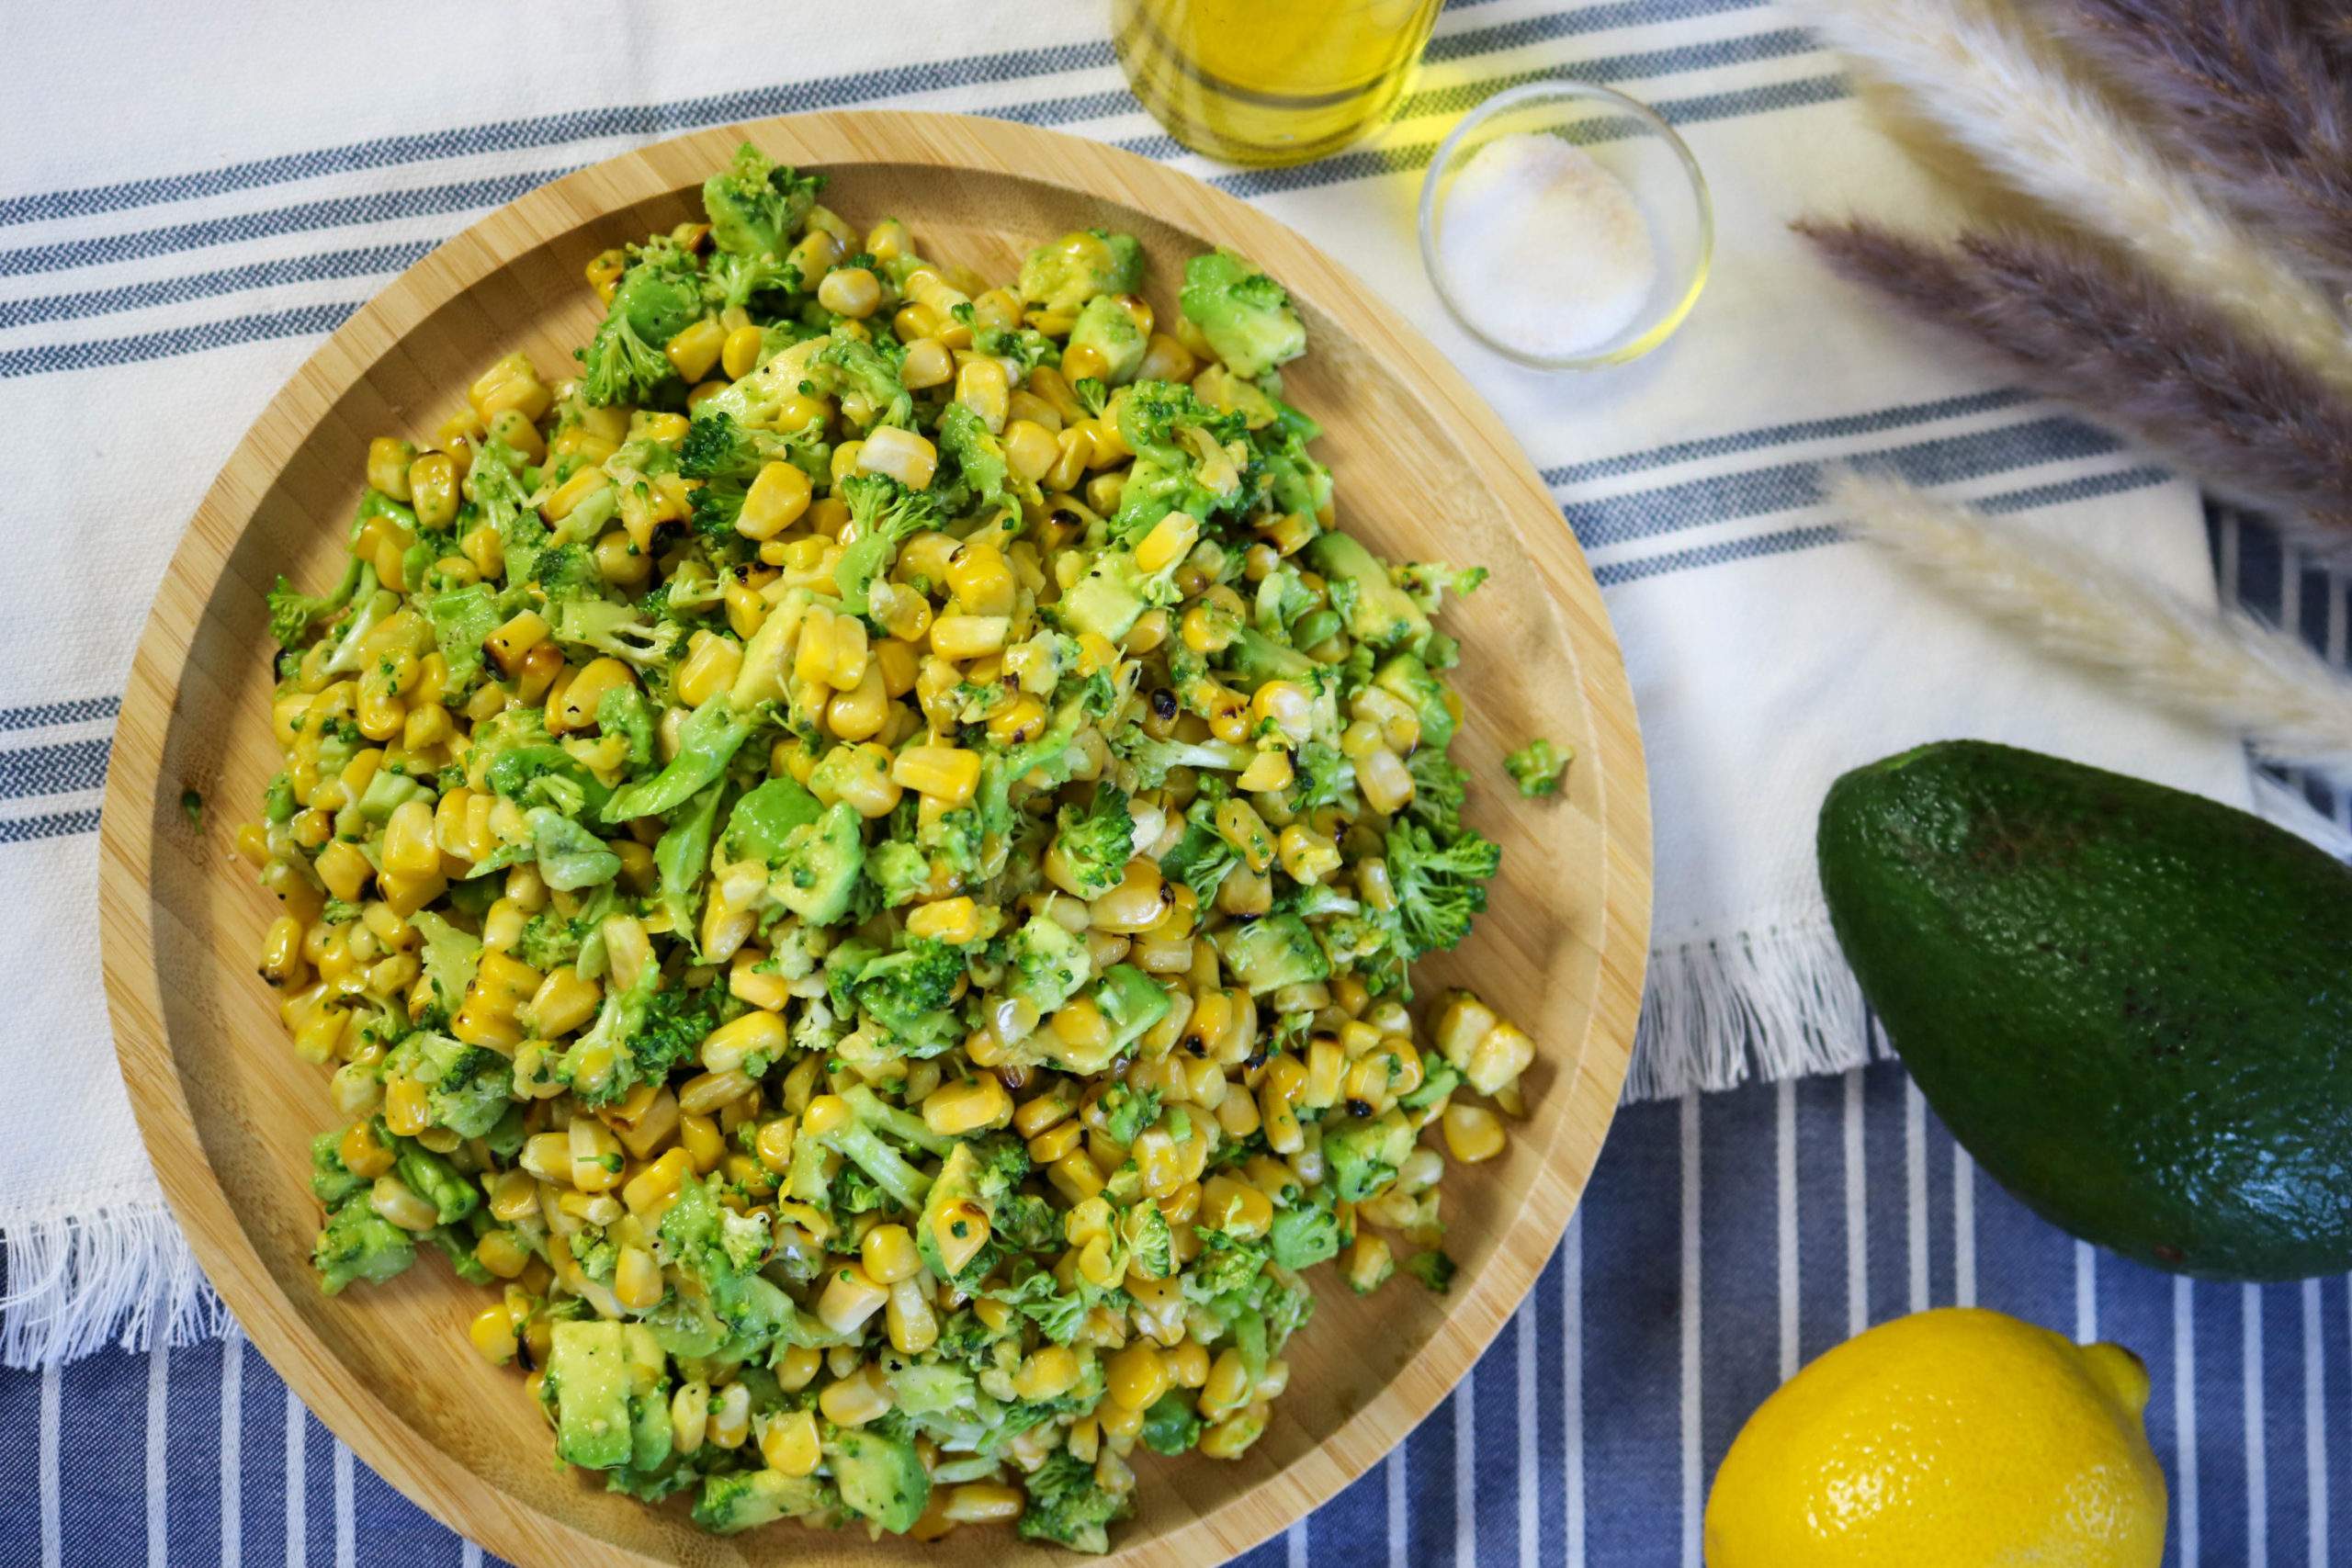 Healthy Corn Salad With Broccoli and Avocado